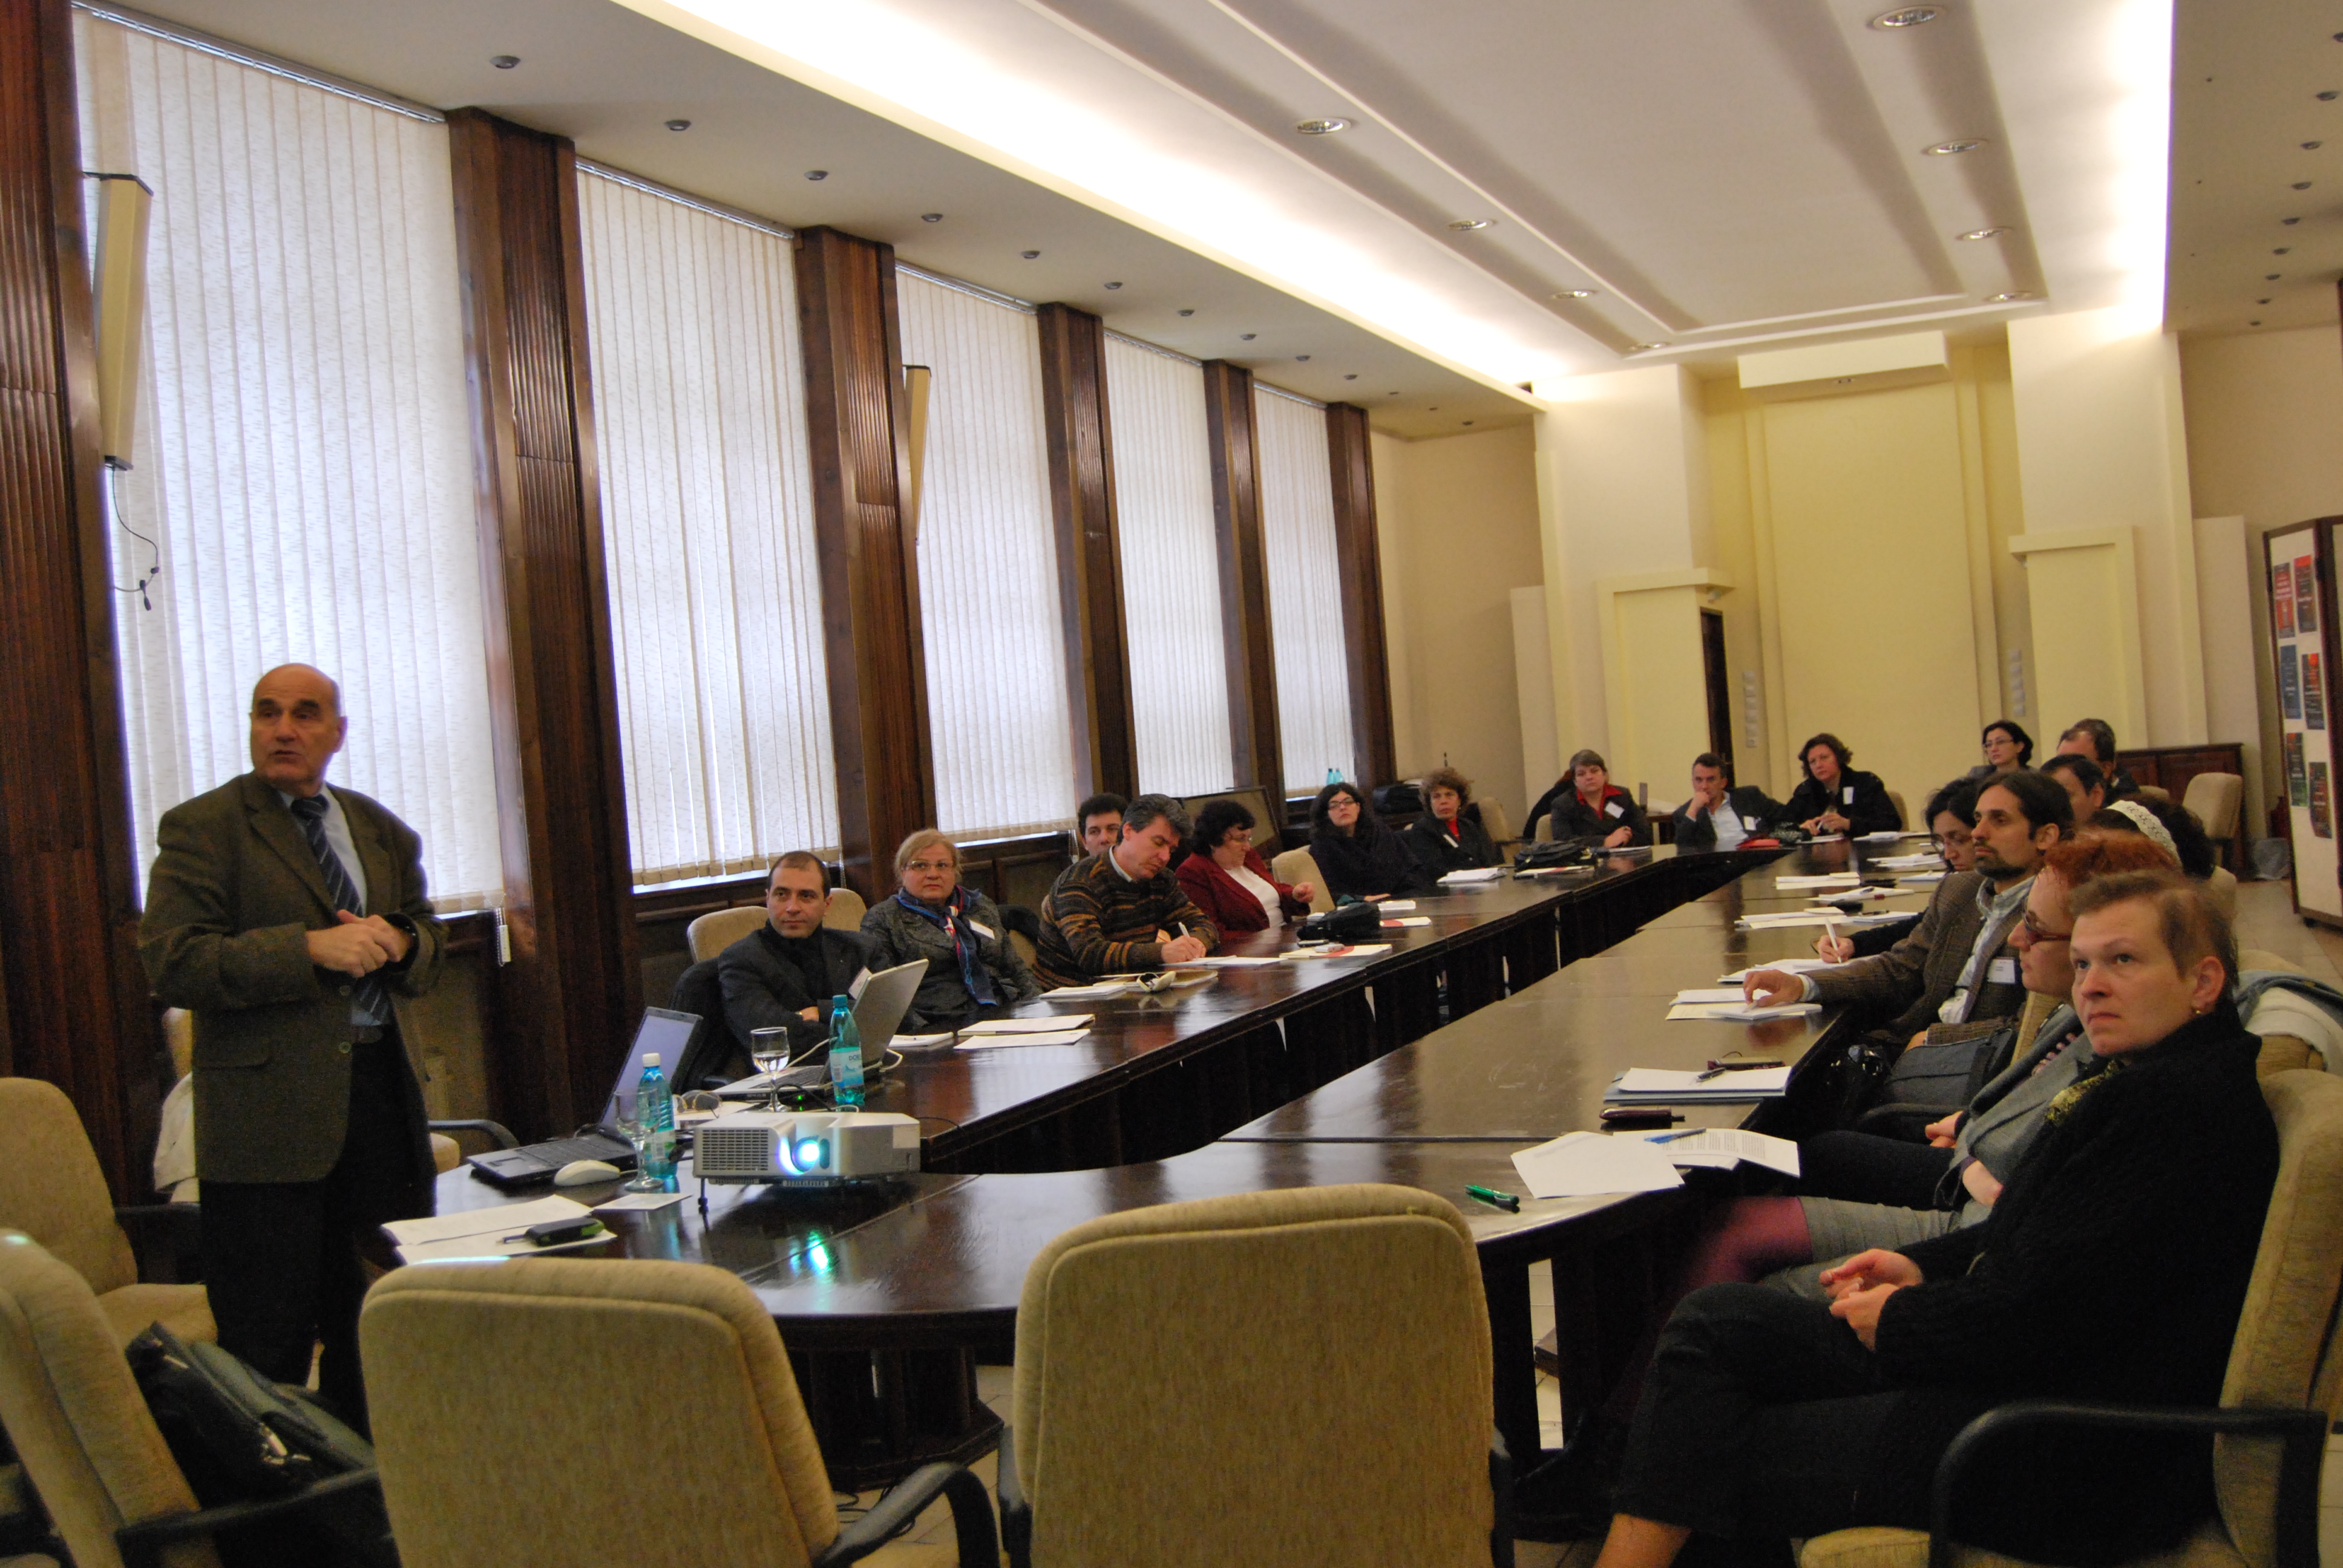 Sesiune de formare a modulului Guvernanta universitara, Cluj-Napoca